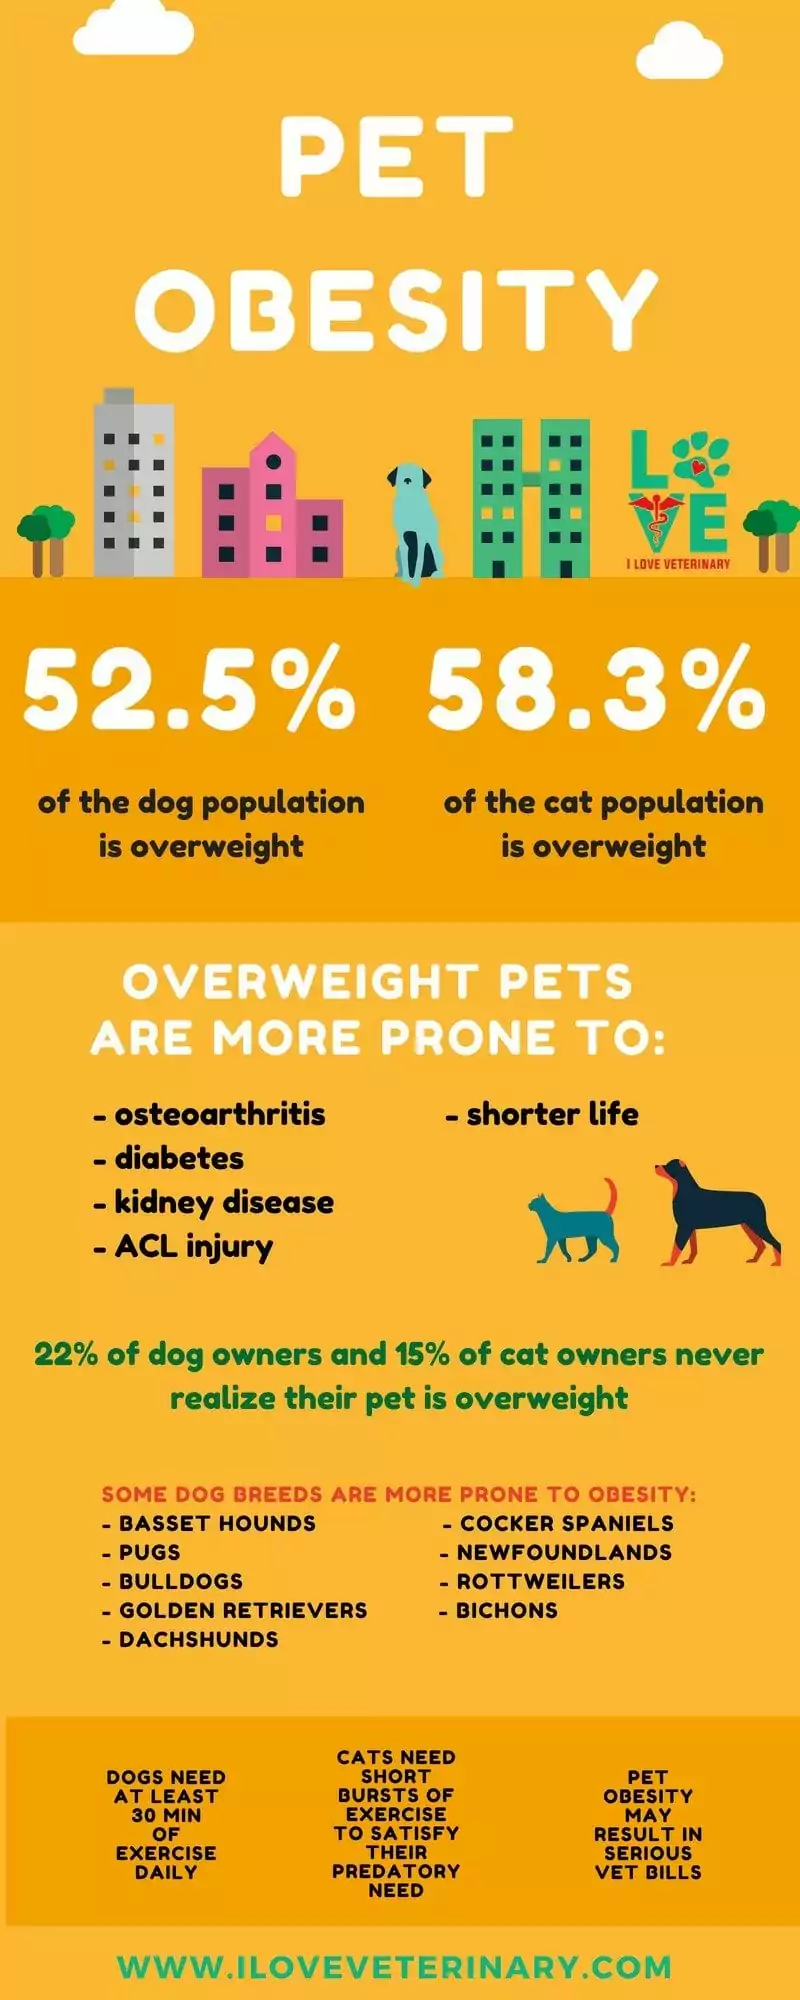 pet obesity2 1 I Love Veterinary - Blog for Veterinarians, Vet Techs, Students